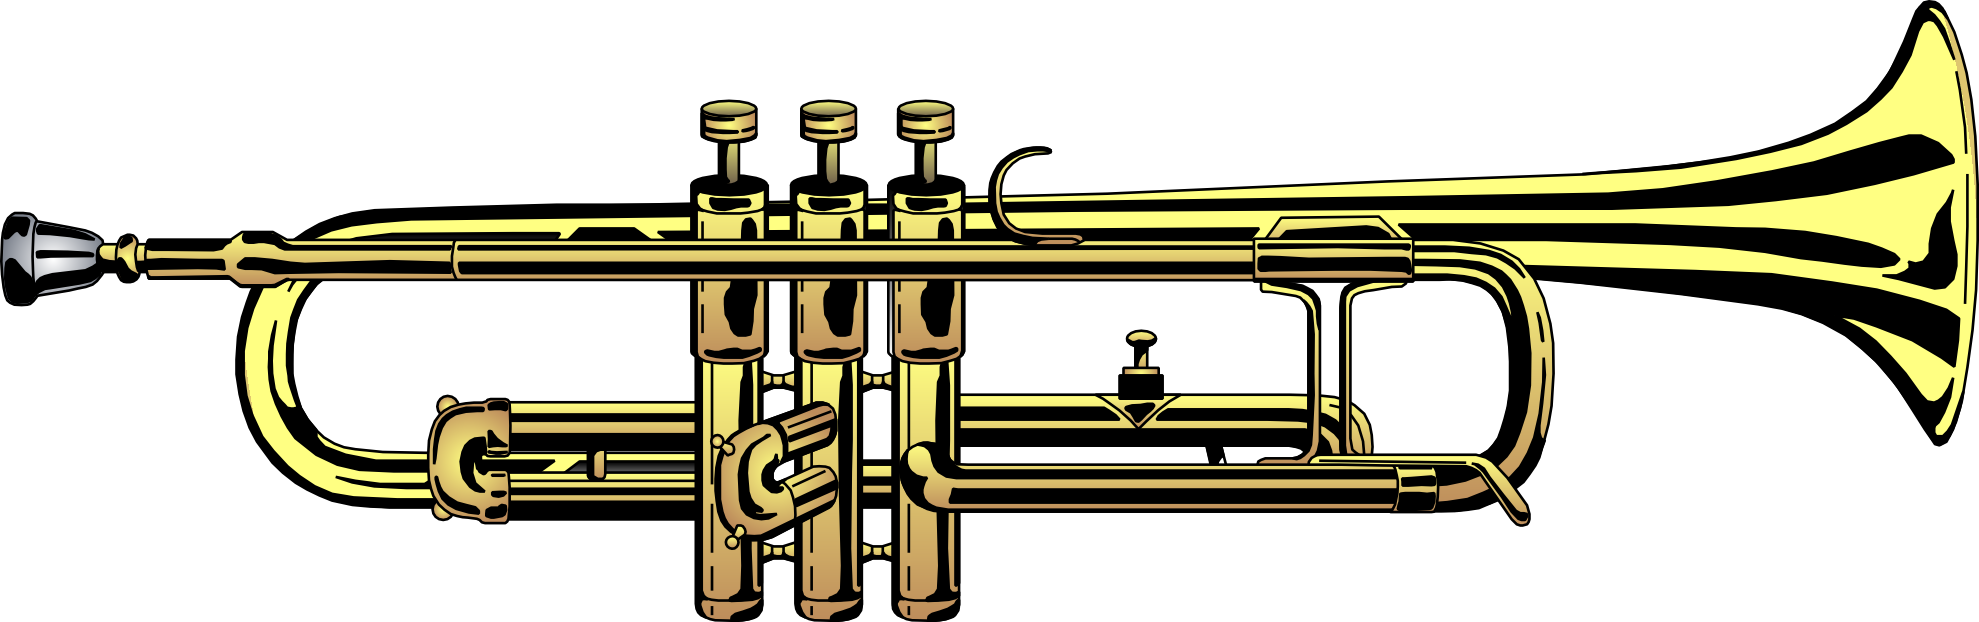 Clip Art Trumpet | Clip Art Pin